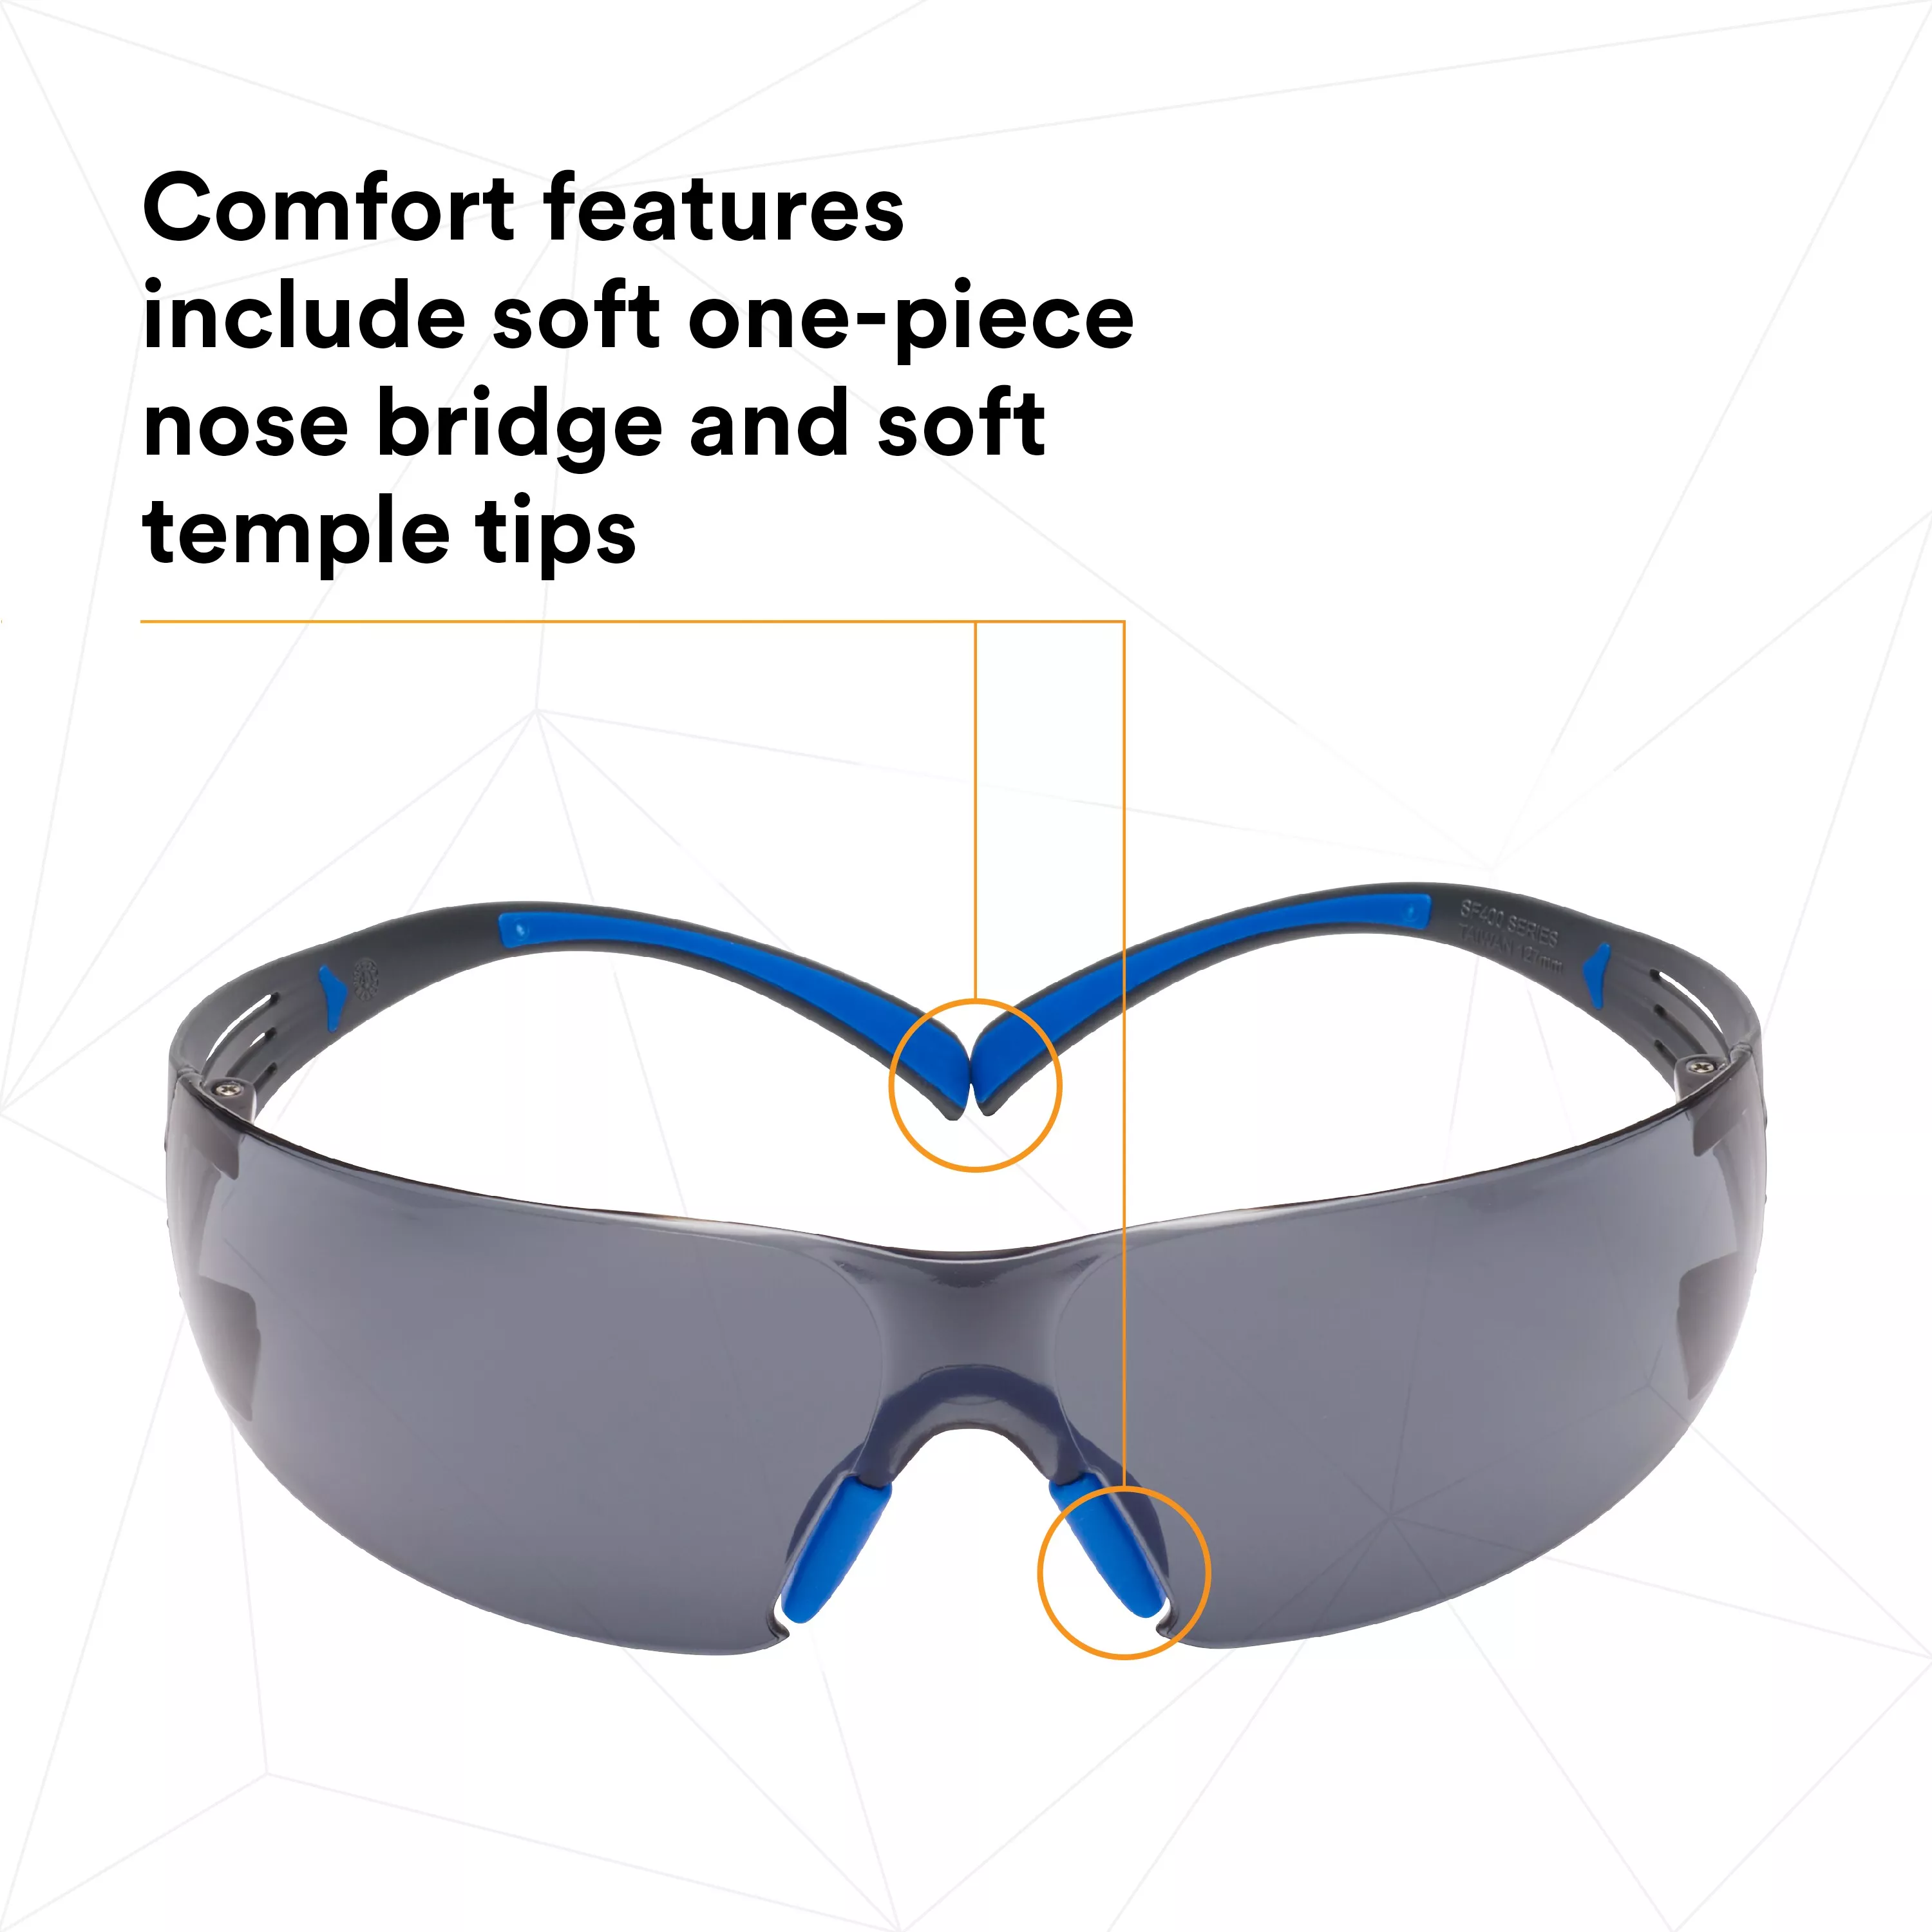 SKU 7100156101 | 3M™ SecureFit™ Safety Glasses SF402SGAF-BLU